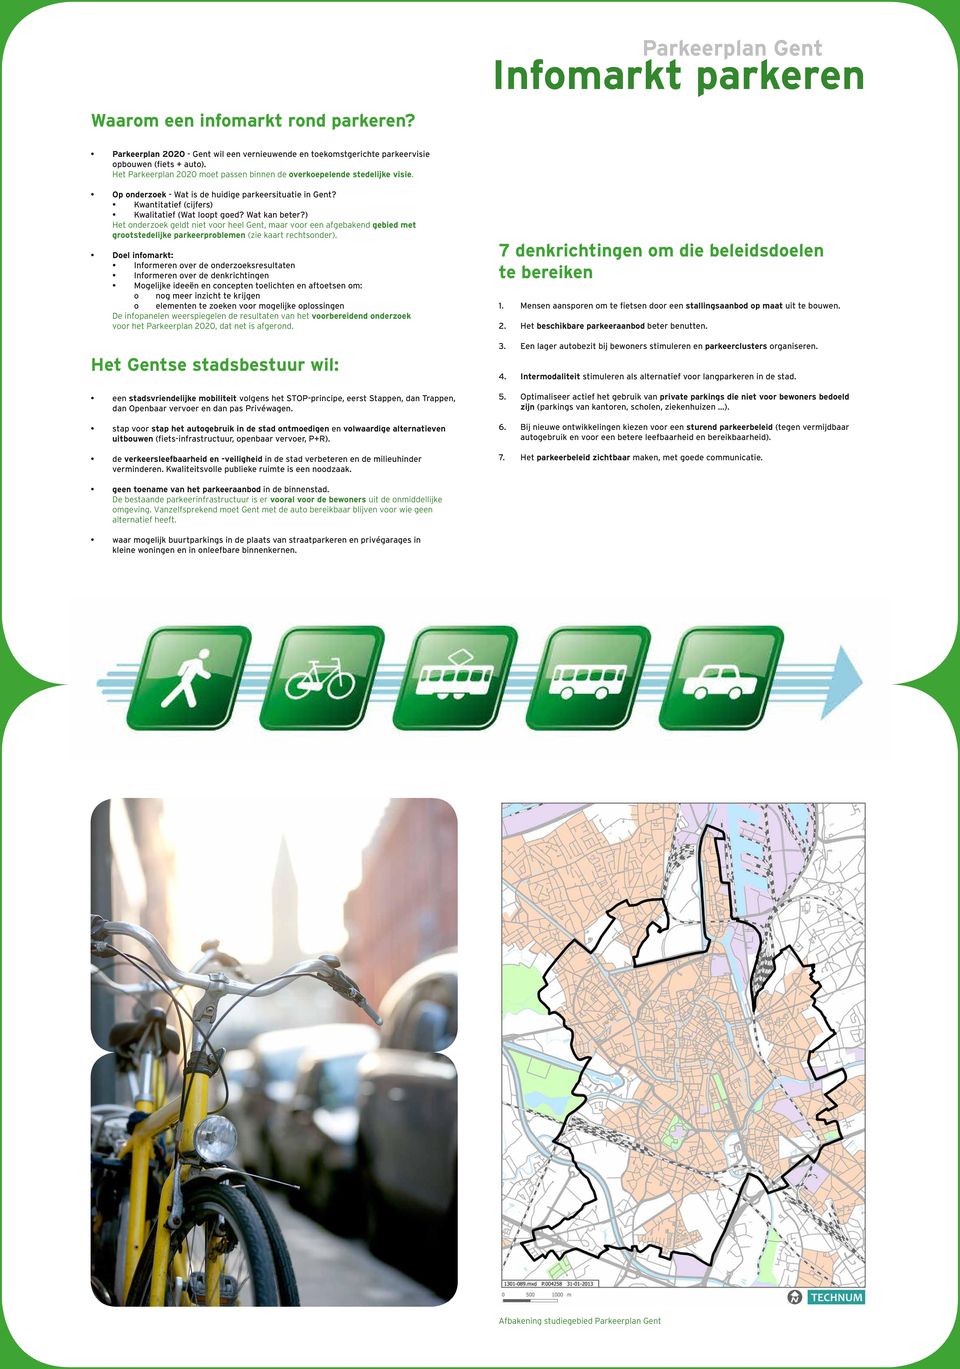 ) Het onderzoek geldt niet voor heel Gent, maar voor een afgebakend gebied met grootstedelijke parkeerproblemen (zie kaart rechtsonder).